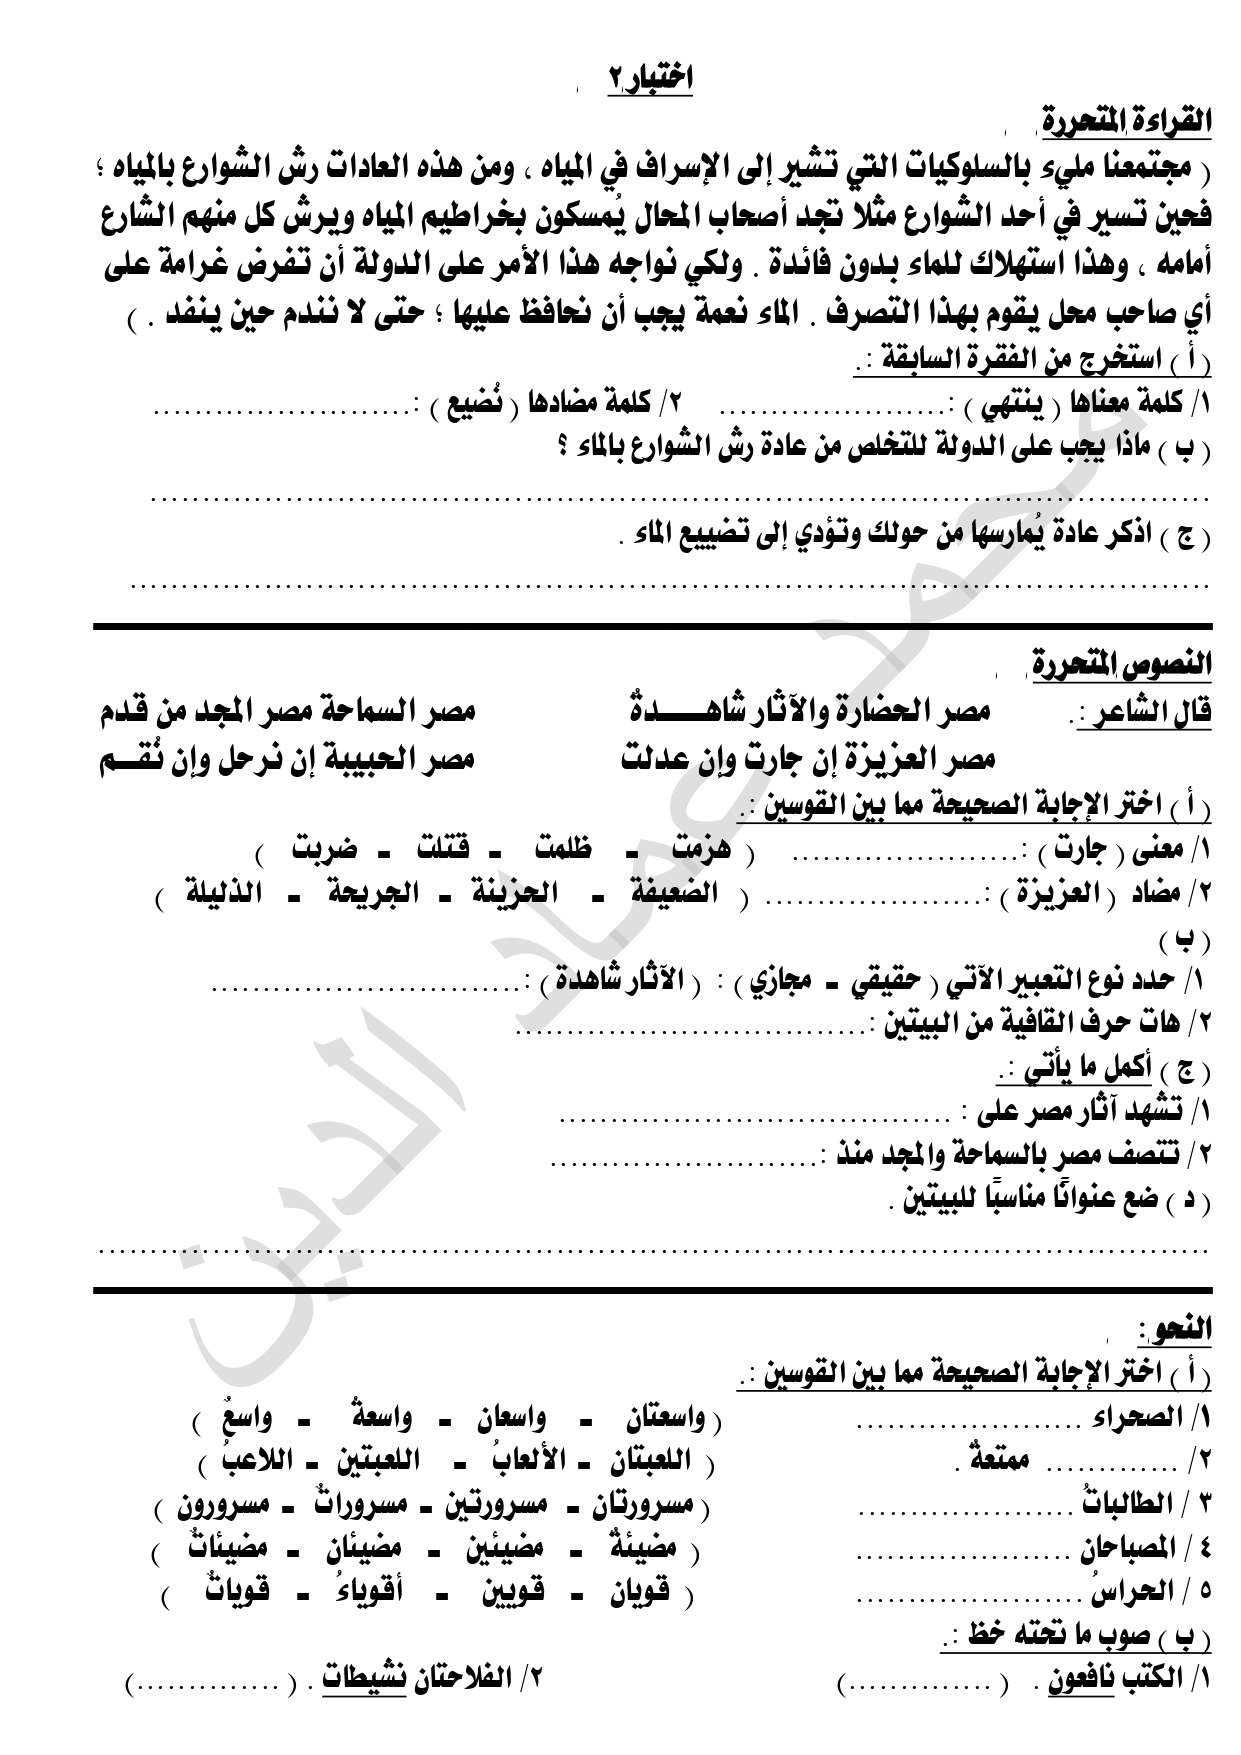 الاختبار الثاني المتحررفي اللغة العربية لطلاب الصف الرابع الابتدائي الفصل الدراسي الثاني